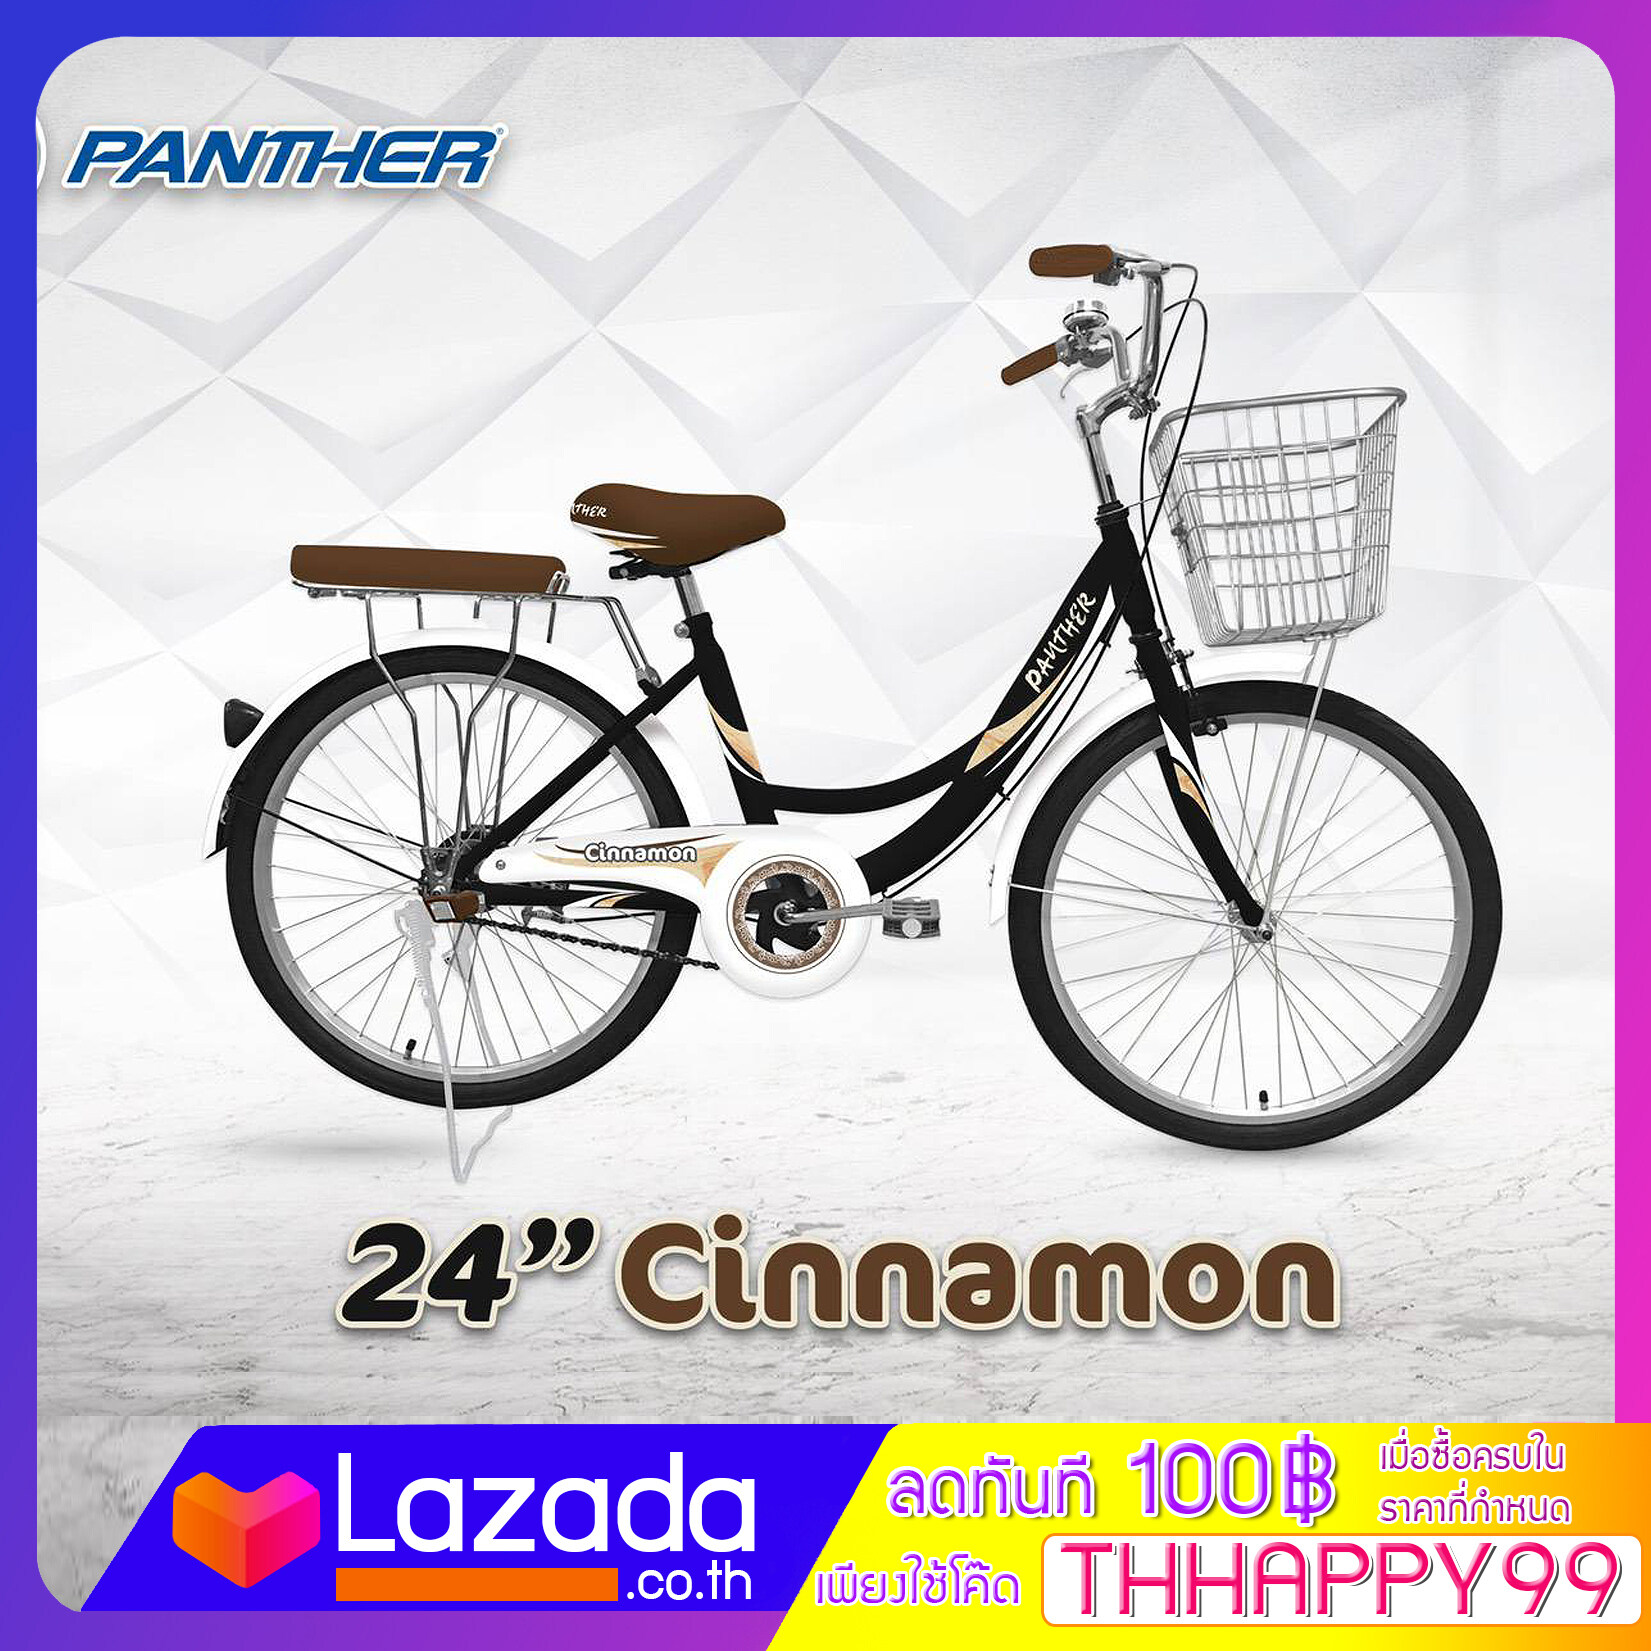 PT จักรยาน จักรยานแม่บ้าน PANTHER 24” Cinnamon (ซินนาม่อน) แม่บ้านวินเทจญี่ปุ่น พร้อมตะกร้าใบใหญ่ช้อปปิ้งได้จัดเต็ม